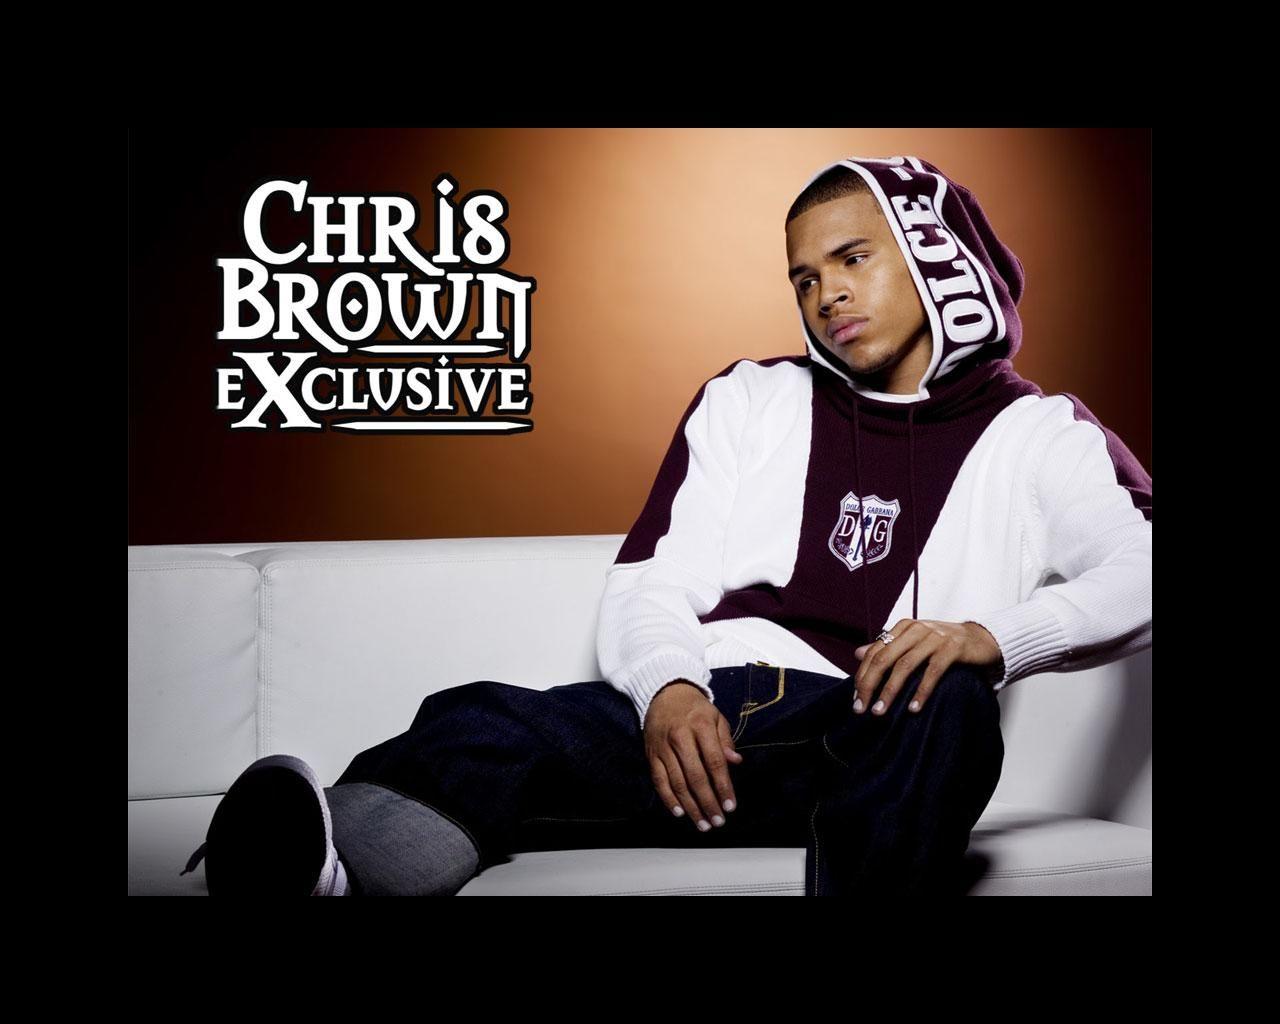 Download the Chris Brown Wallpaper, Chris Brown iPhone Wallpaper